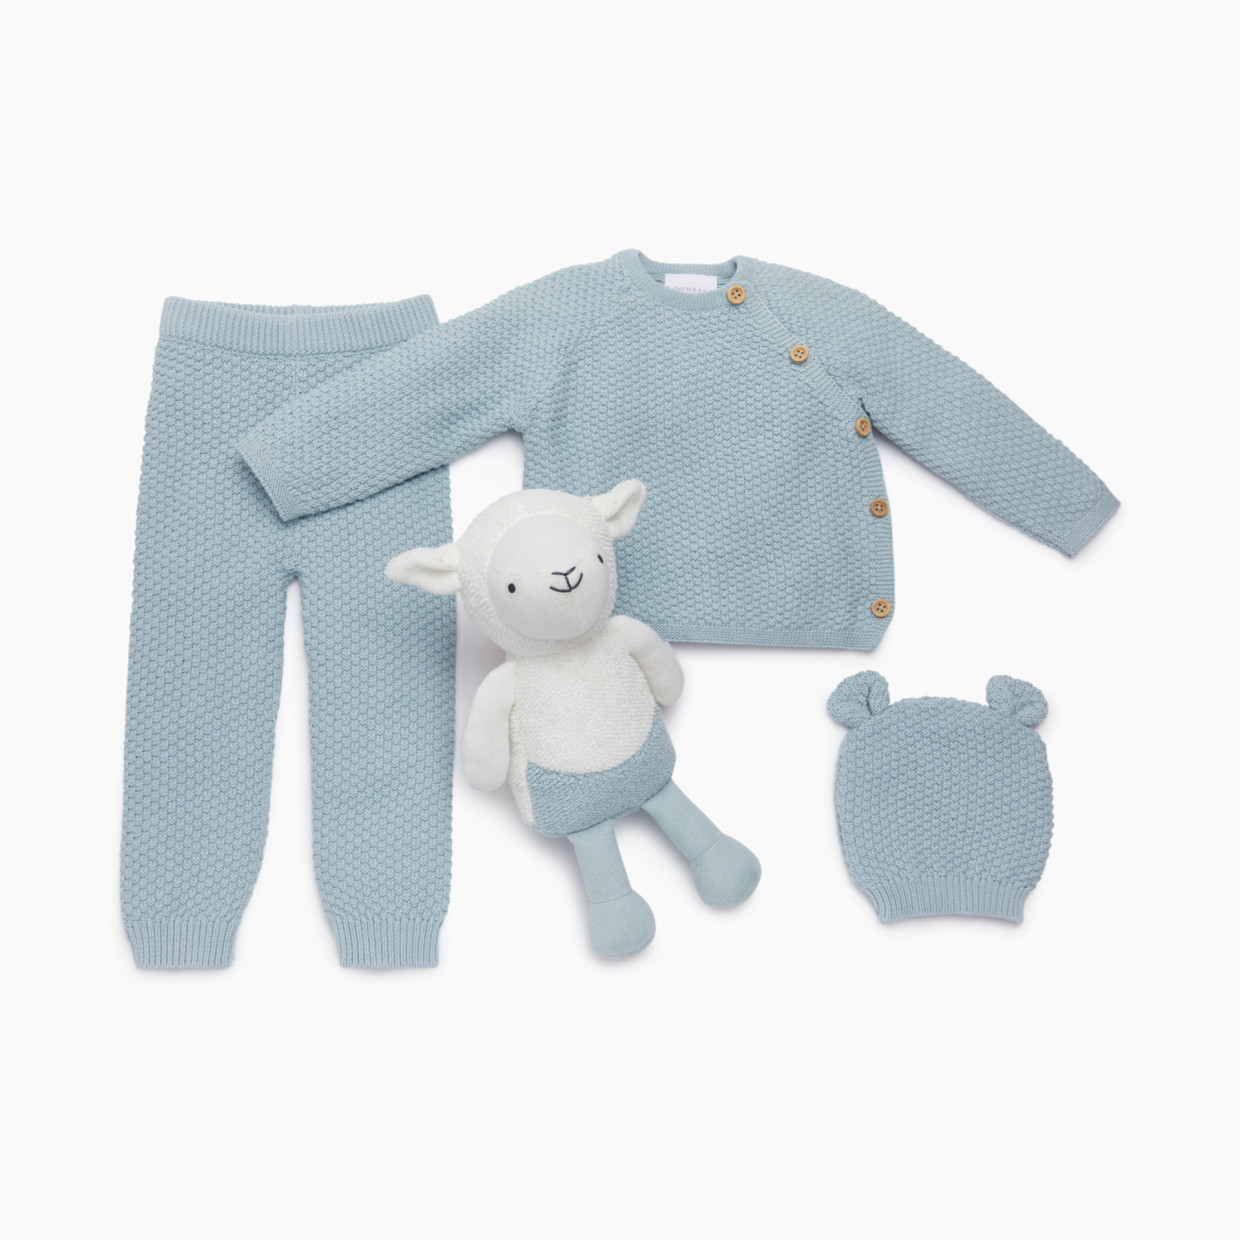 Loomsake 4-Piece Sweater Gift Set - Blue, 0-3 M.